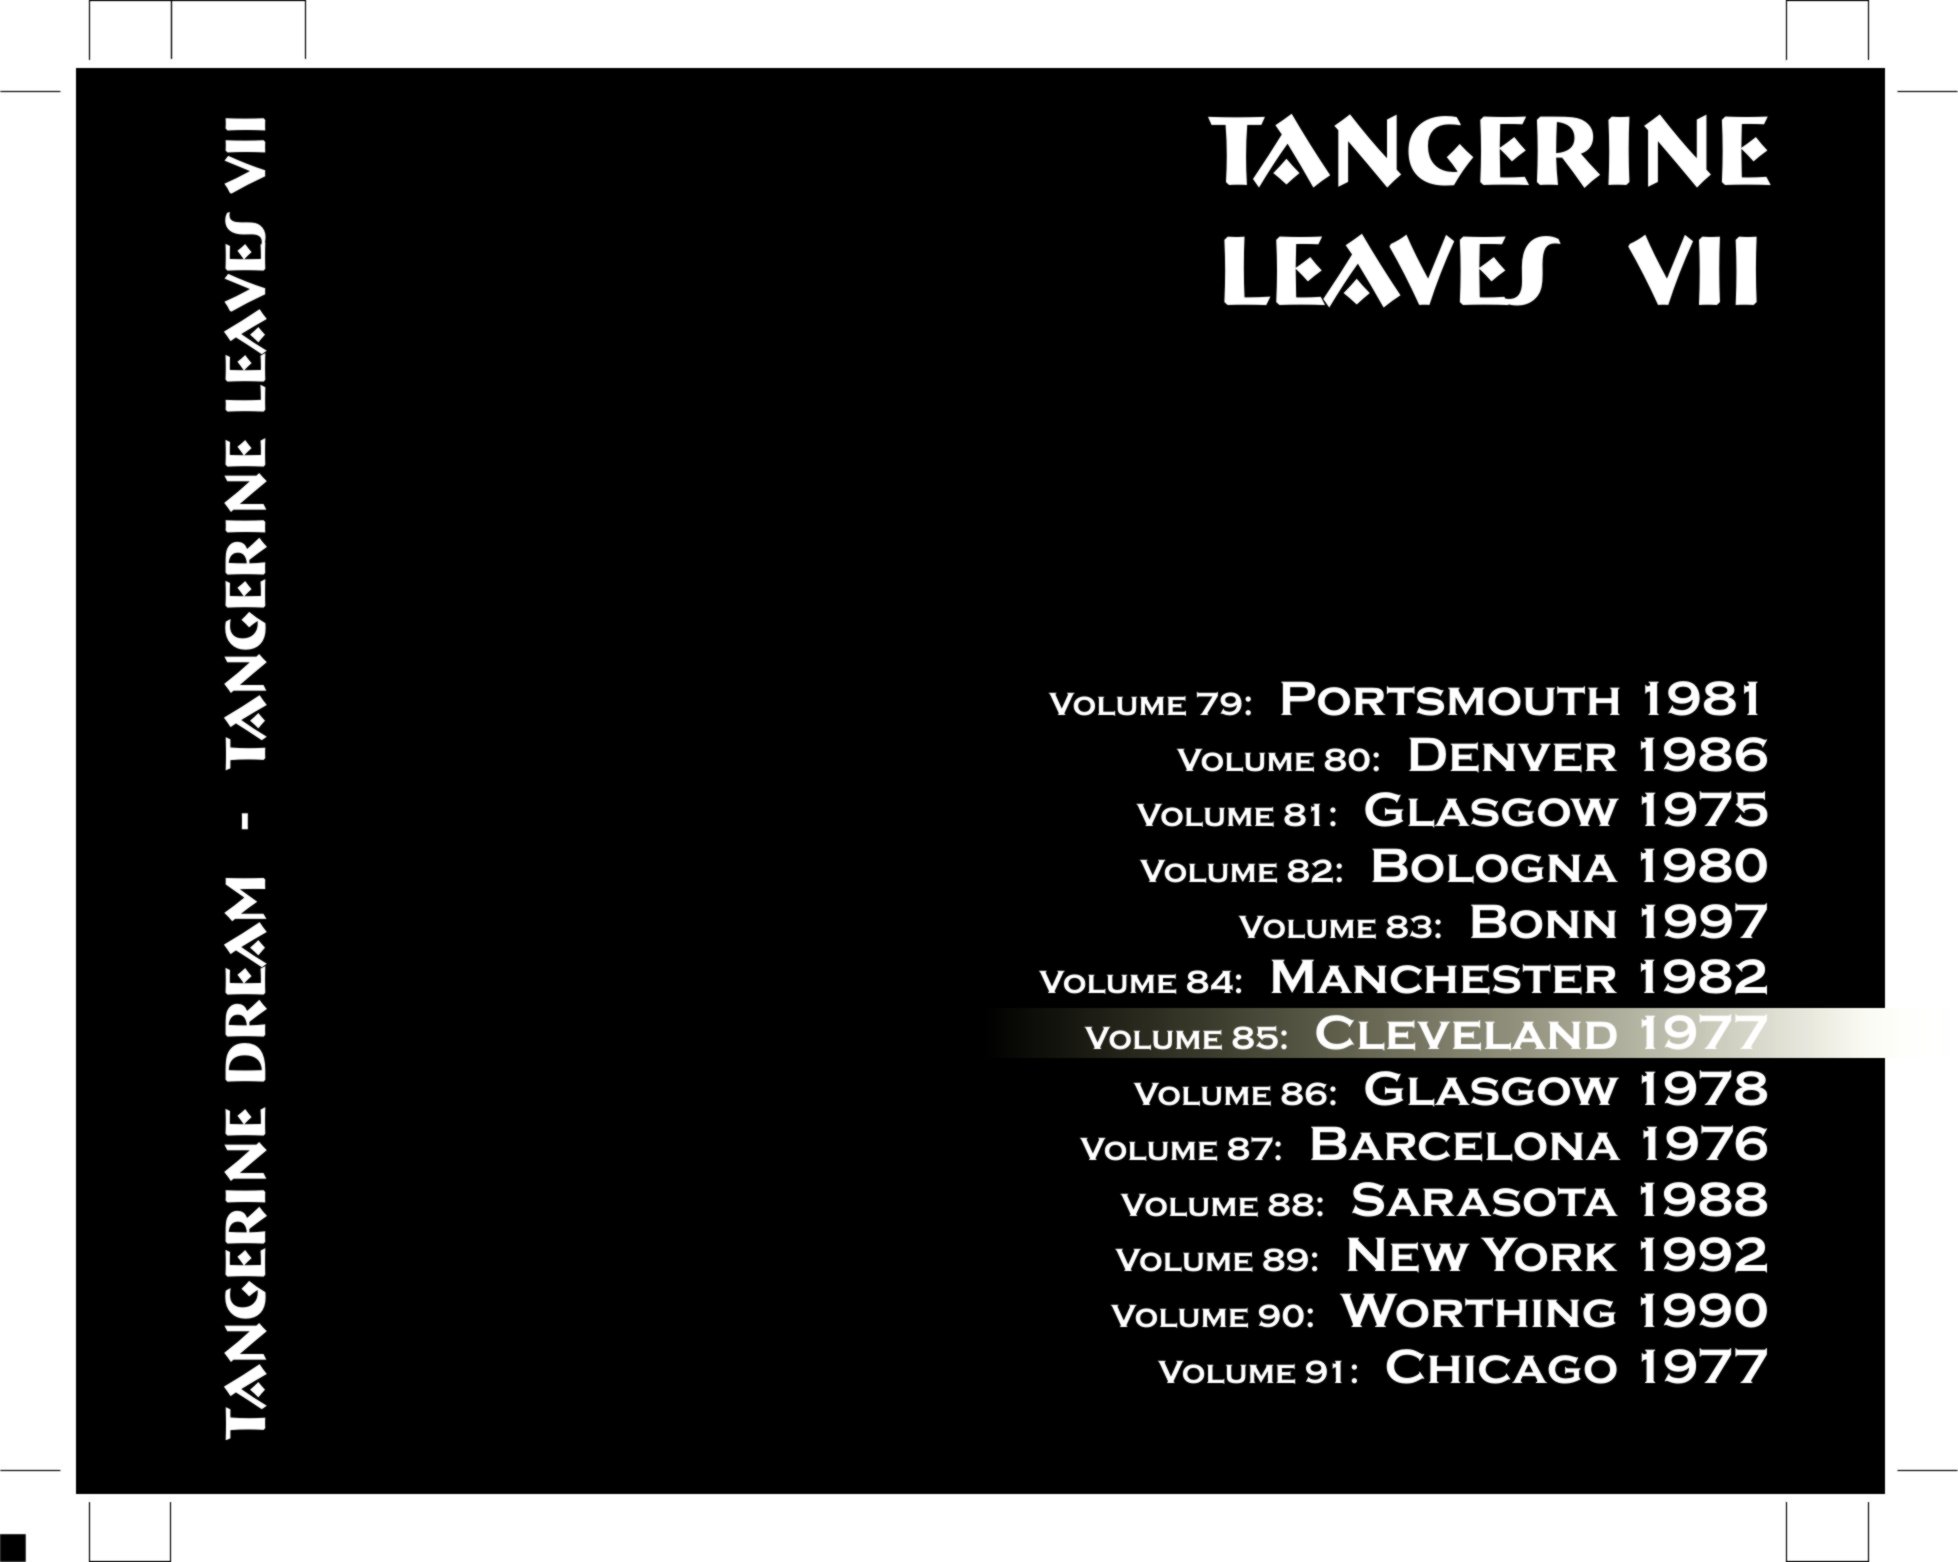 TangerineDreamCleveland1977-04-02MusicHallClevelandOH (7).jpg